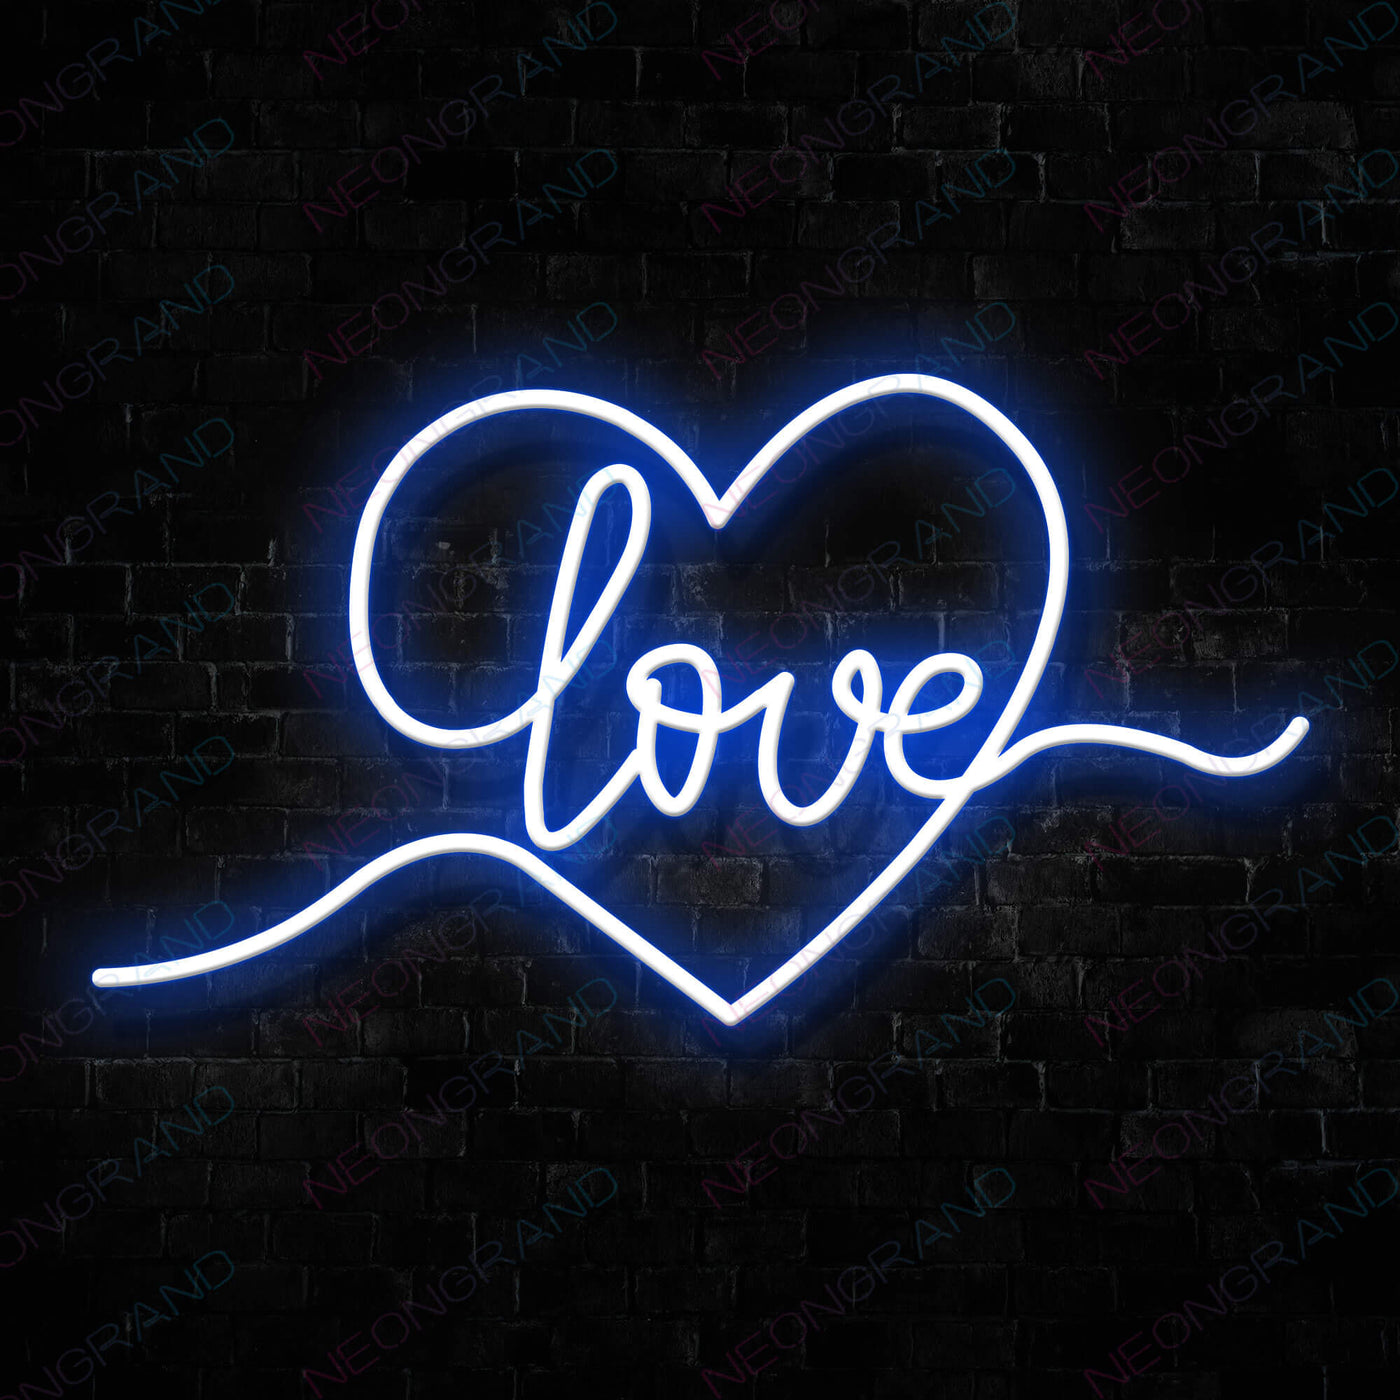 Heart Love Neon Sign Led Light blue